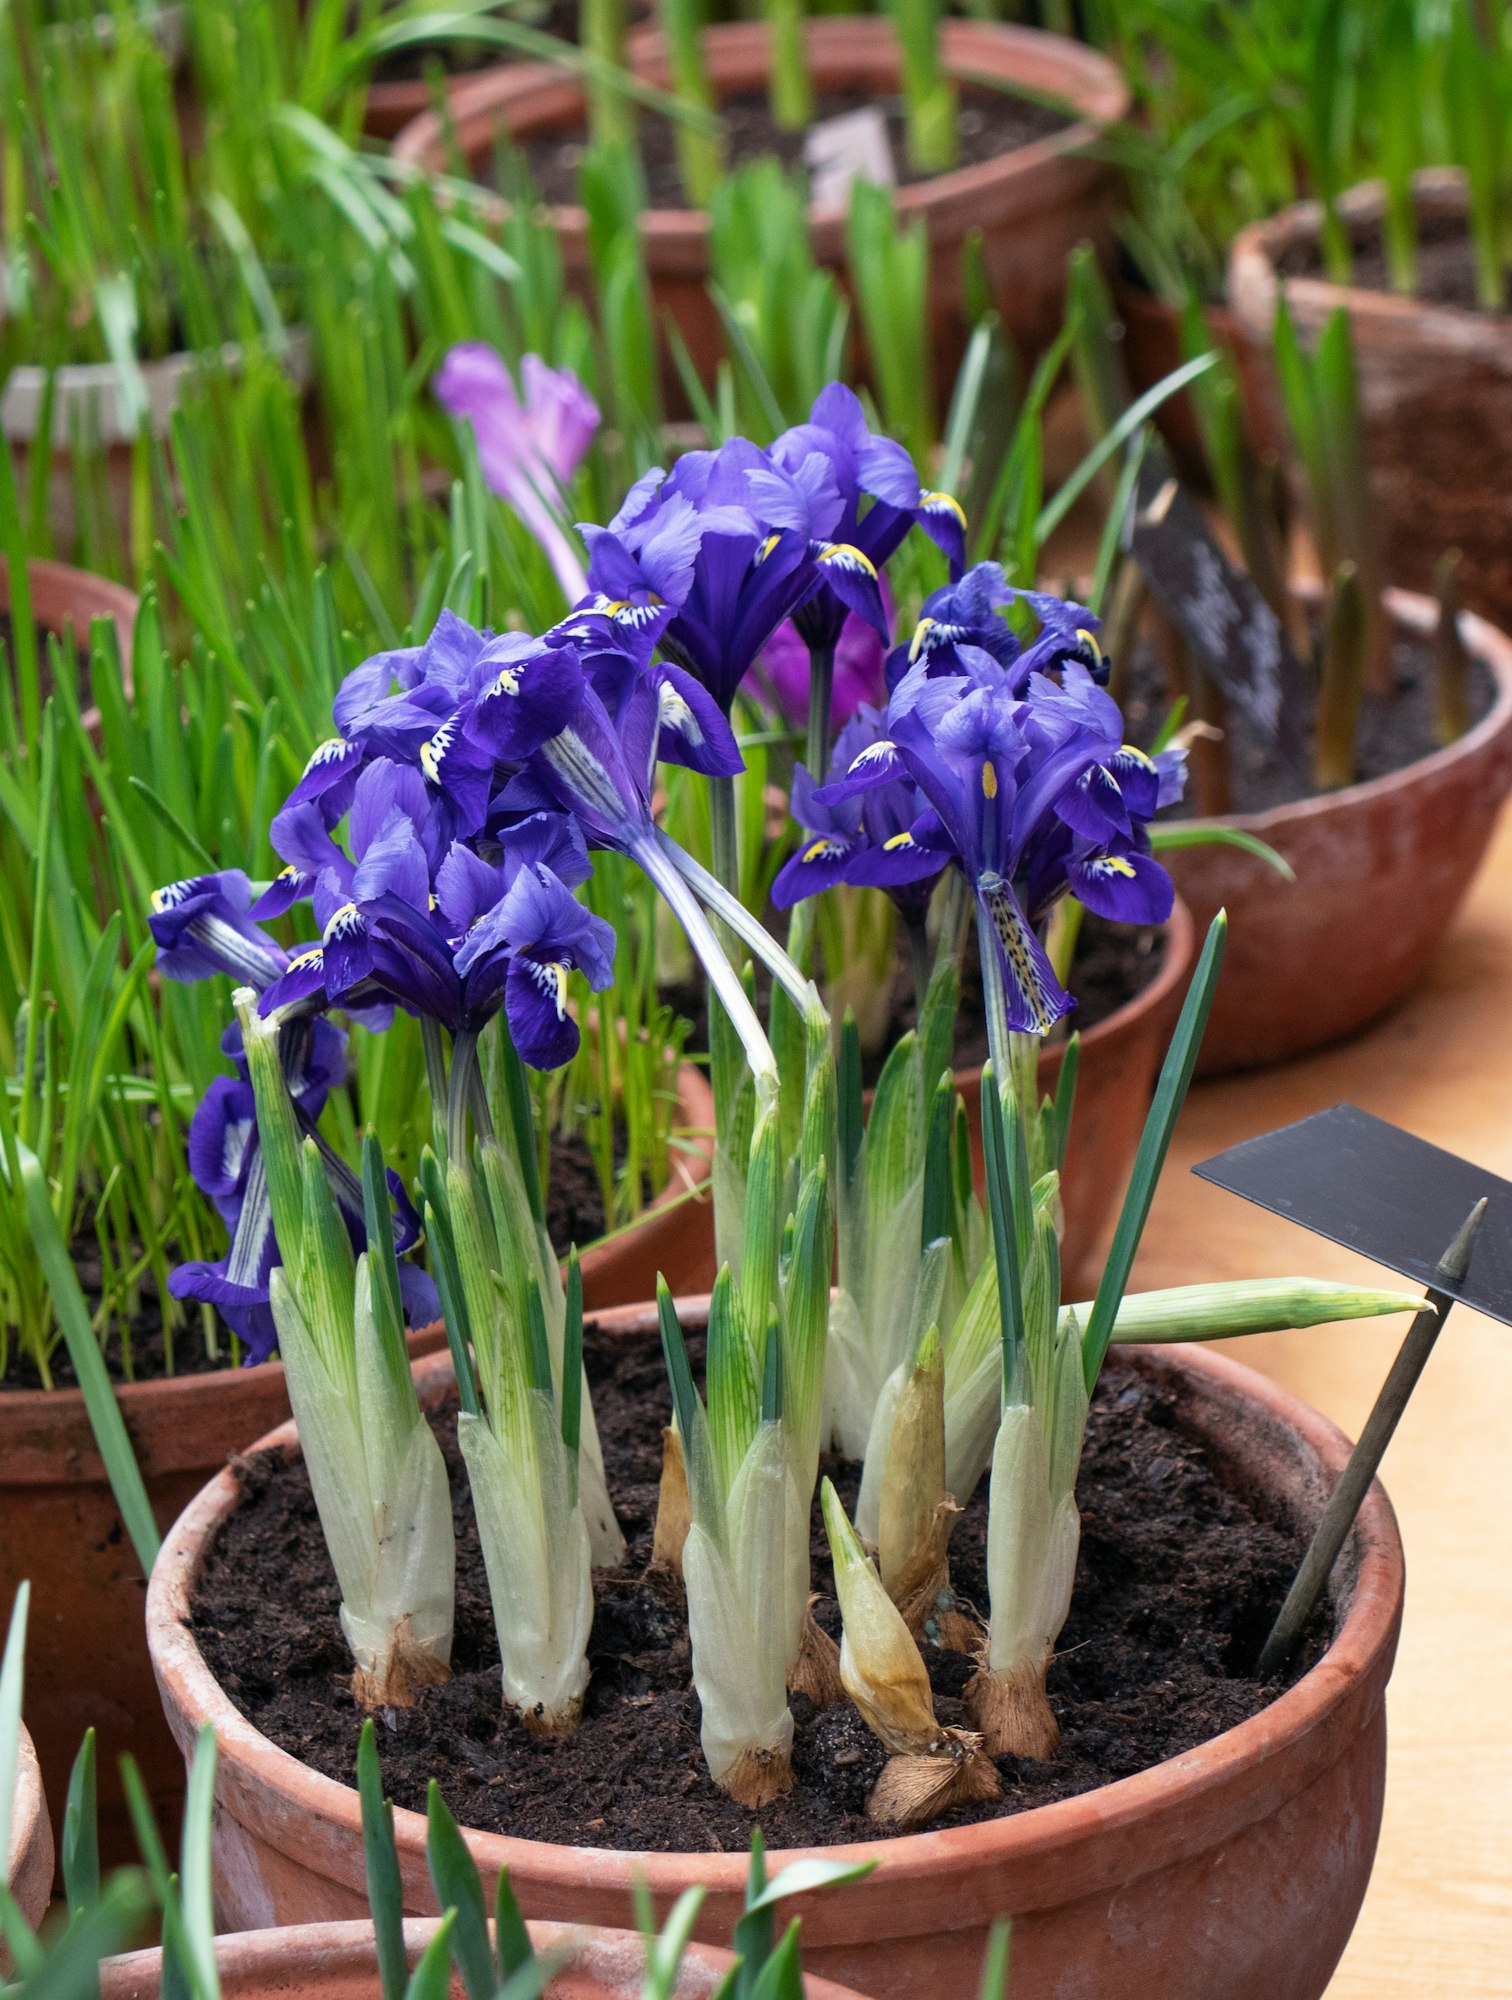 iris flowers in a pot